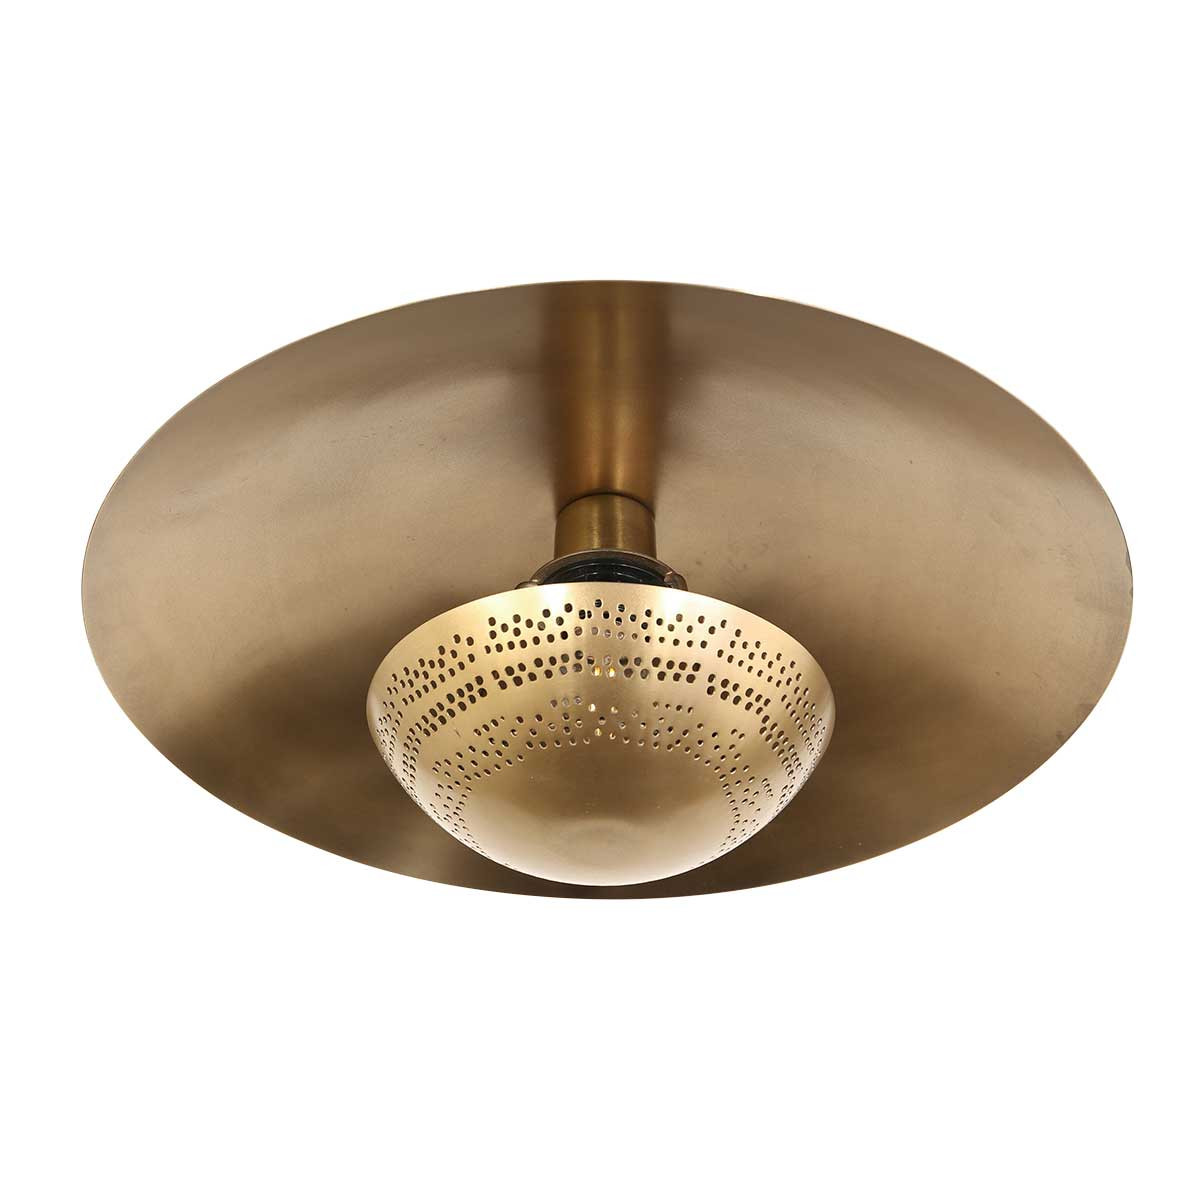 Vintage Deckenlampe in Home Anne Brass & bronze Gold rund Light